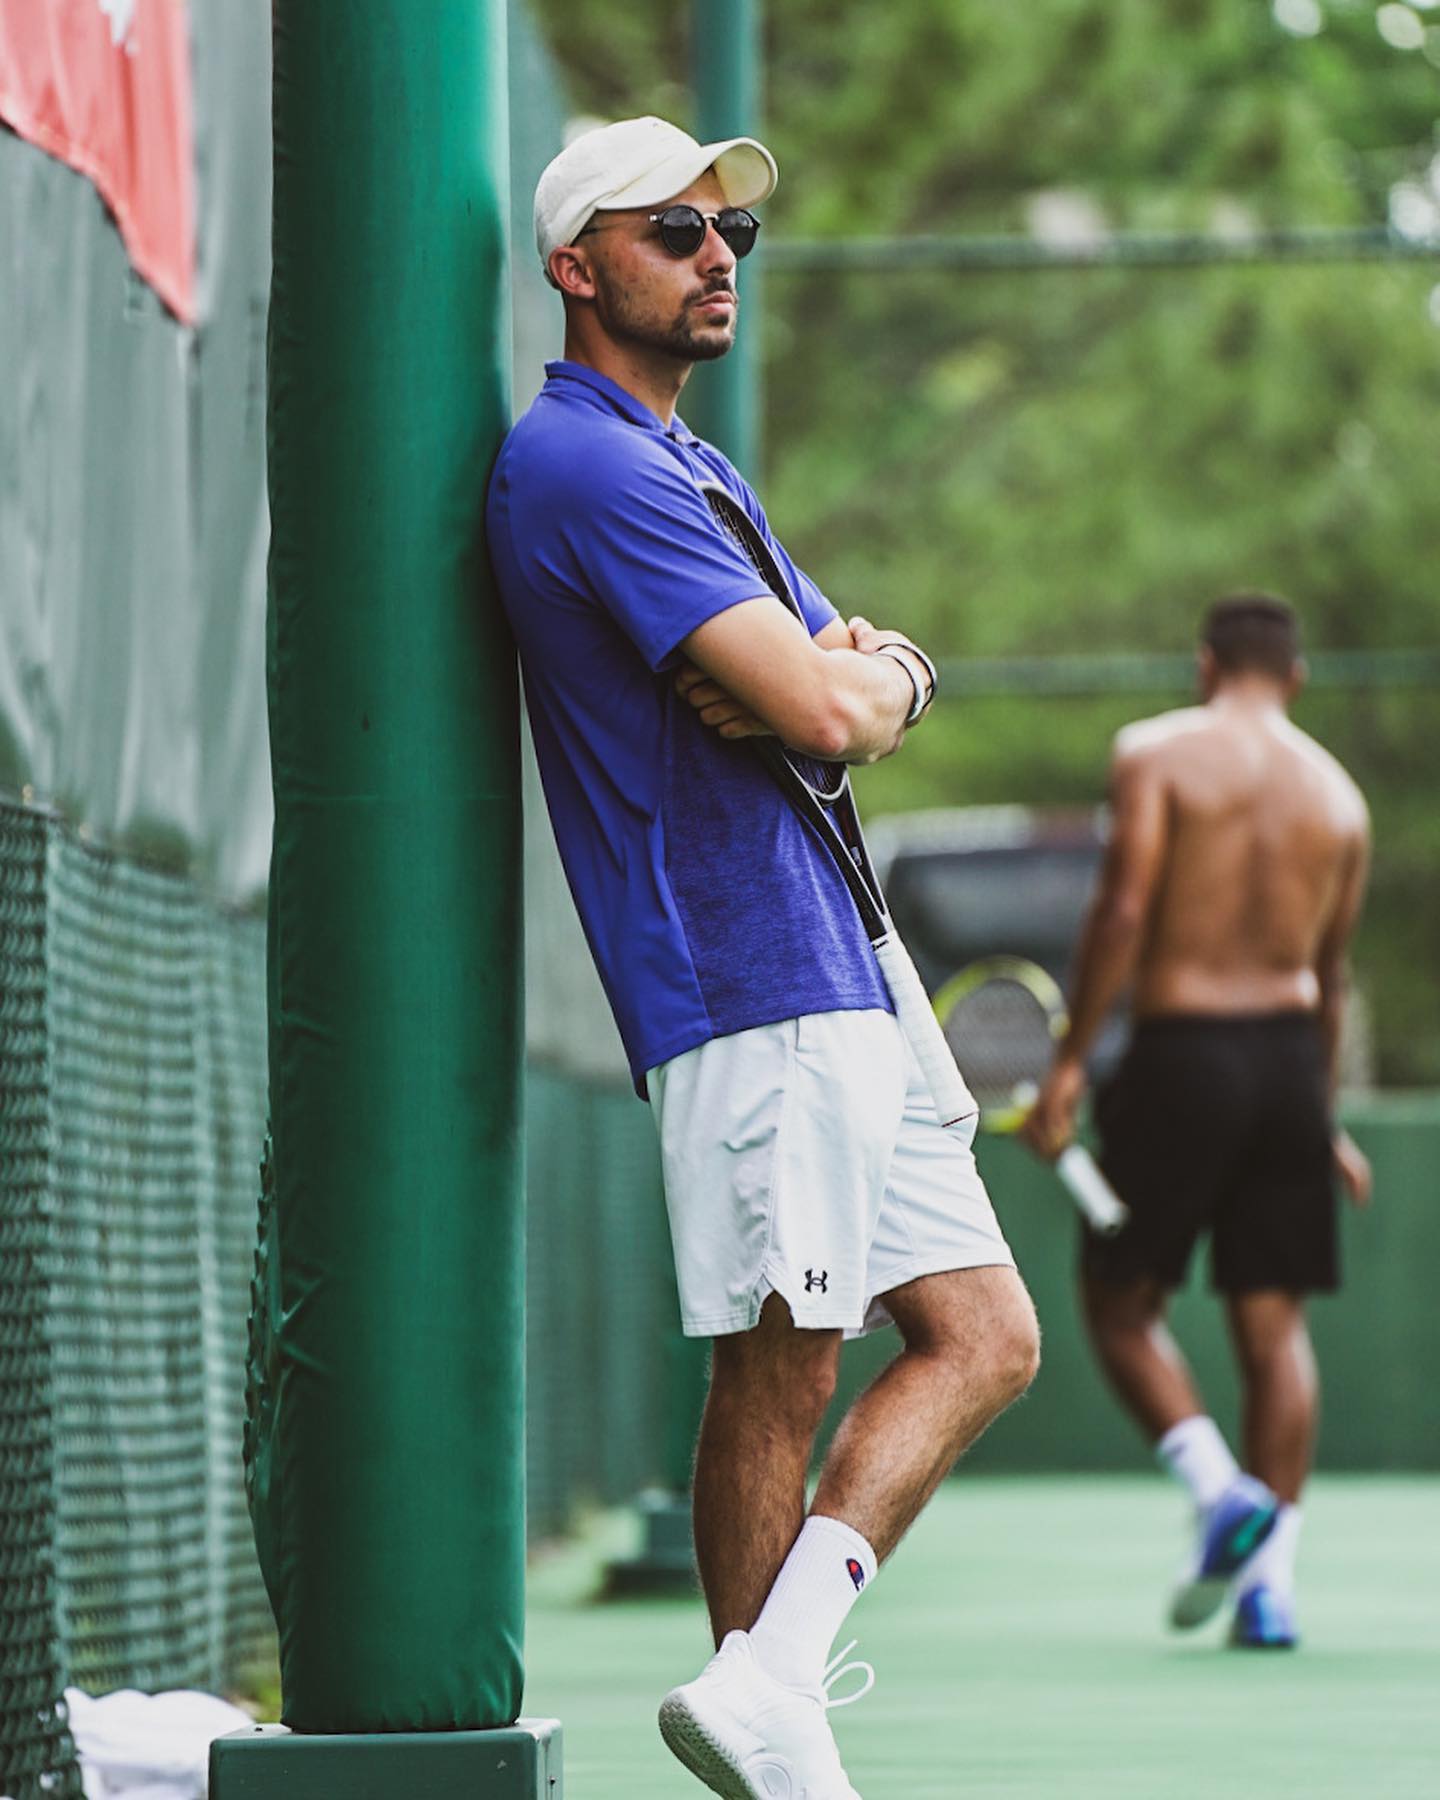 Amine H. teaches tennis lessons in Laguna Hills, CA